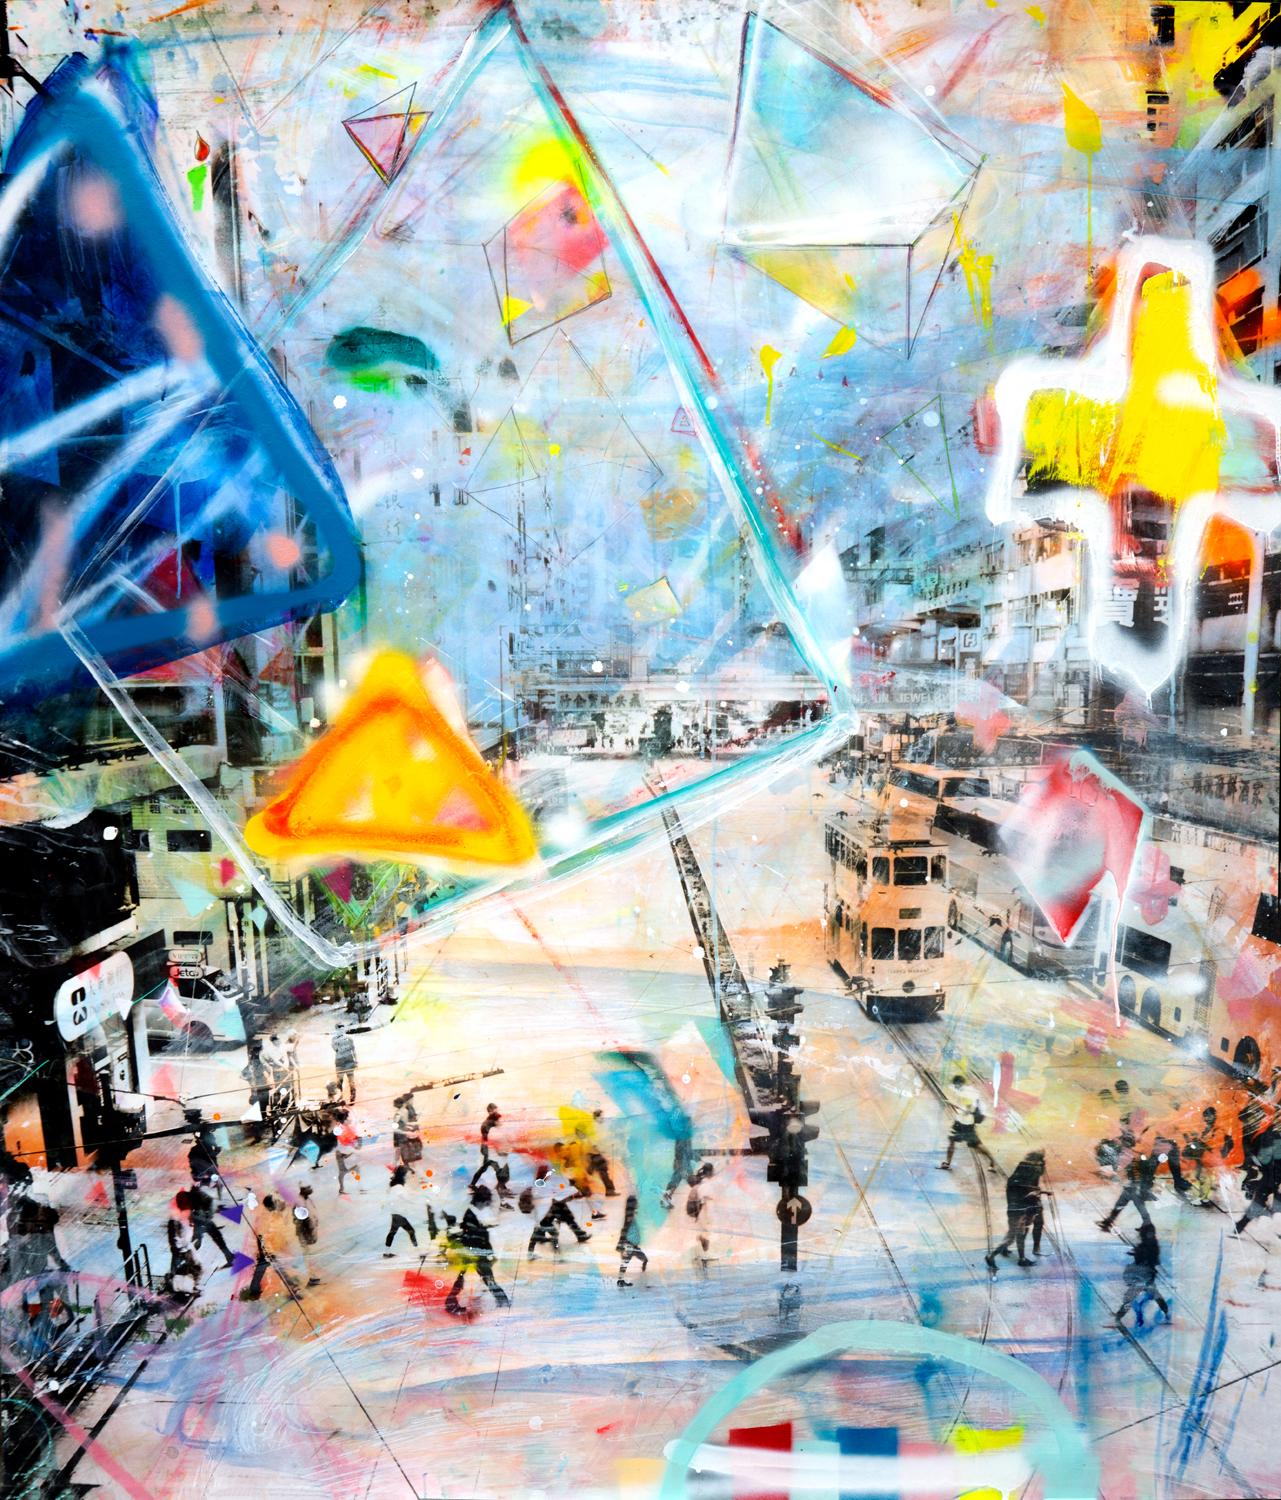 Paradox, photographies peintes à la main, scène urbaine abstraite new-yorkaise colorée et audacieuse